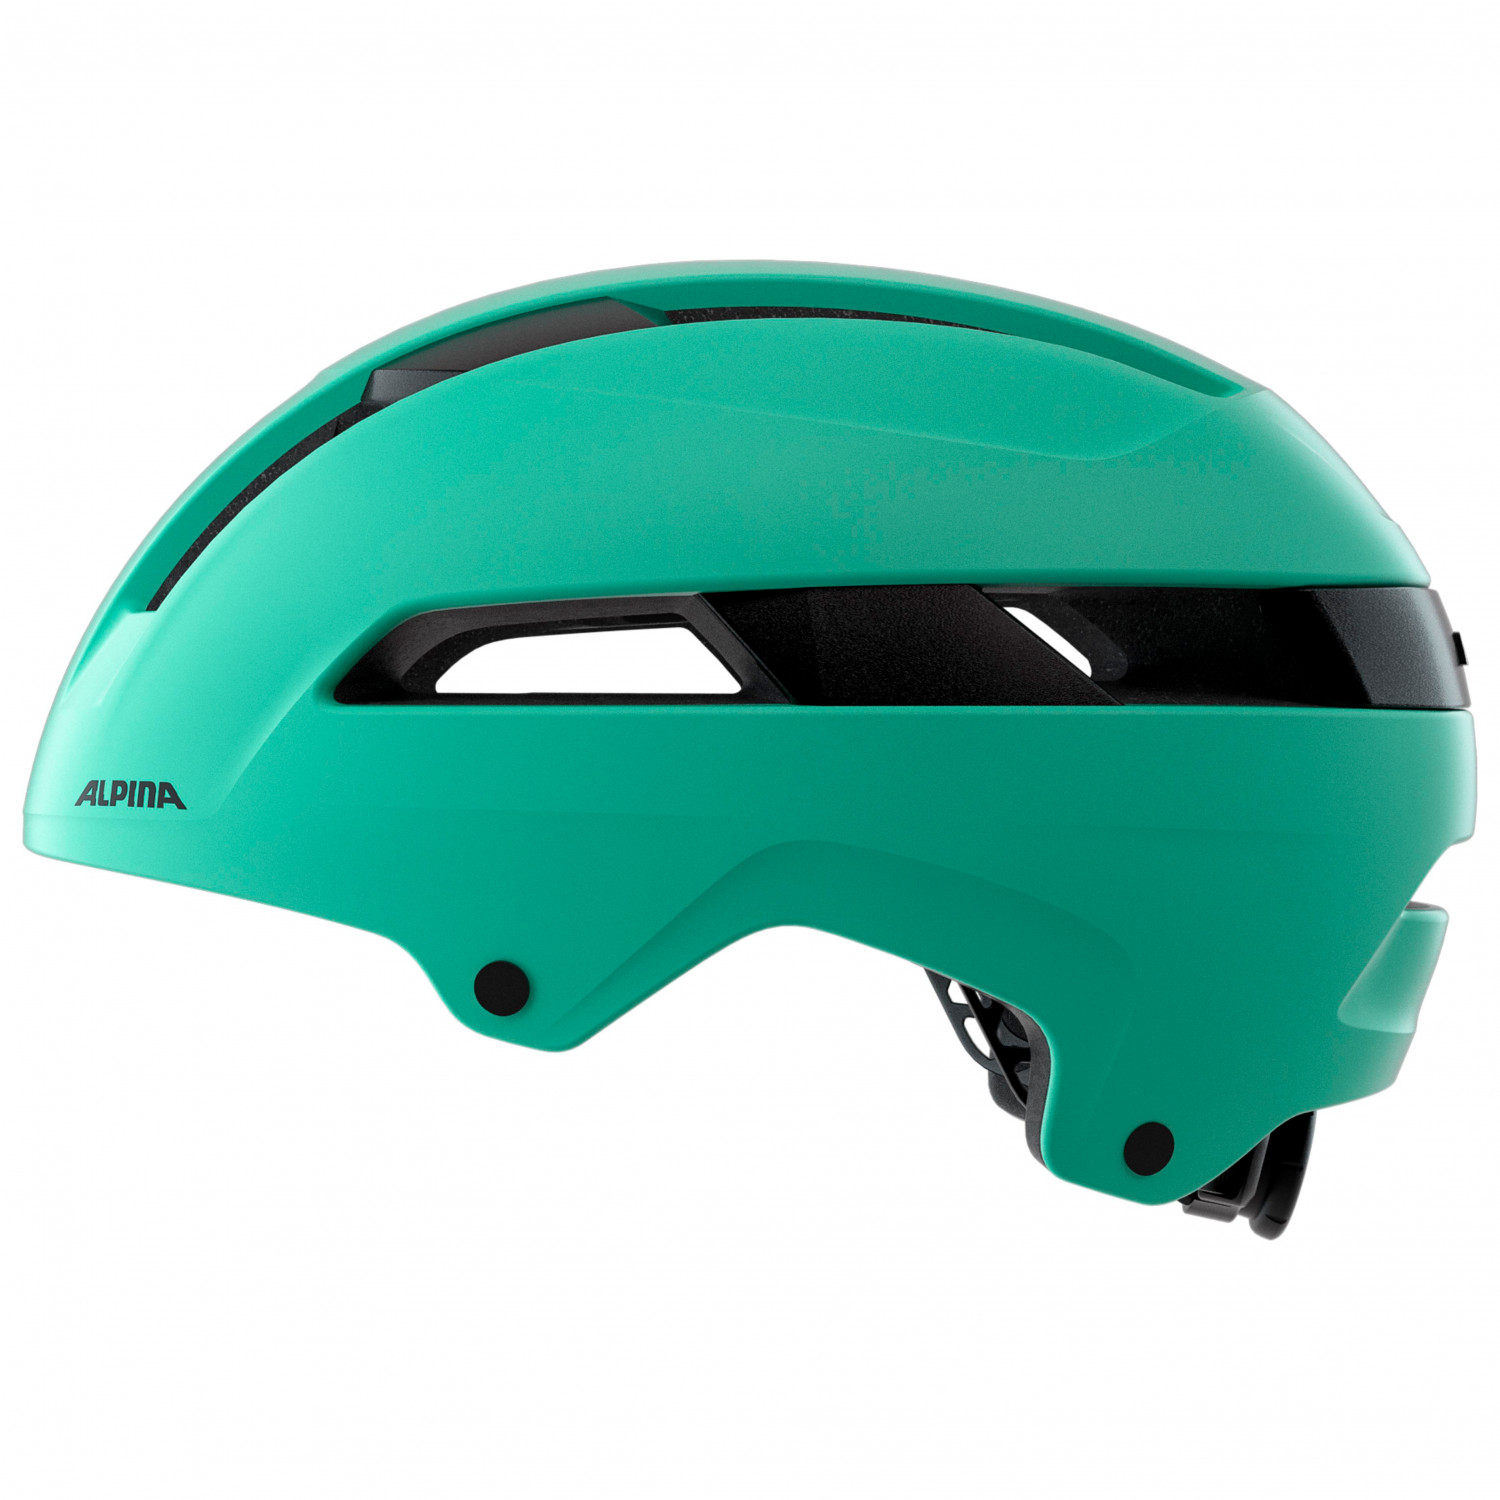 Велосипедный шлем Alpina Soho, цвет Turquoise Matt